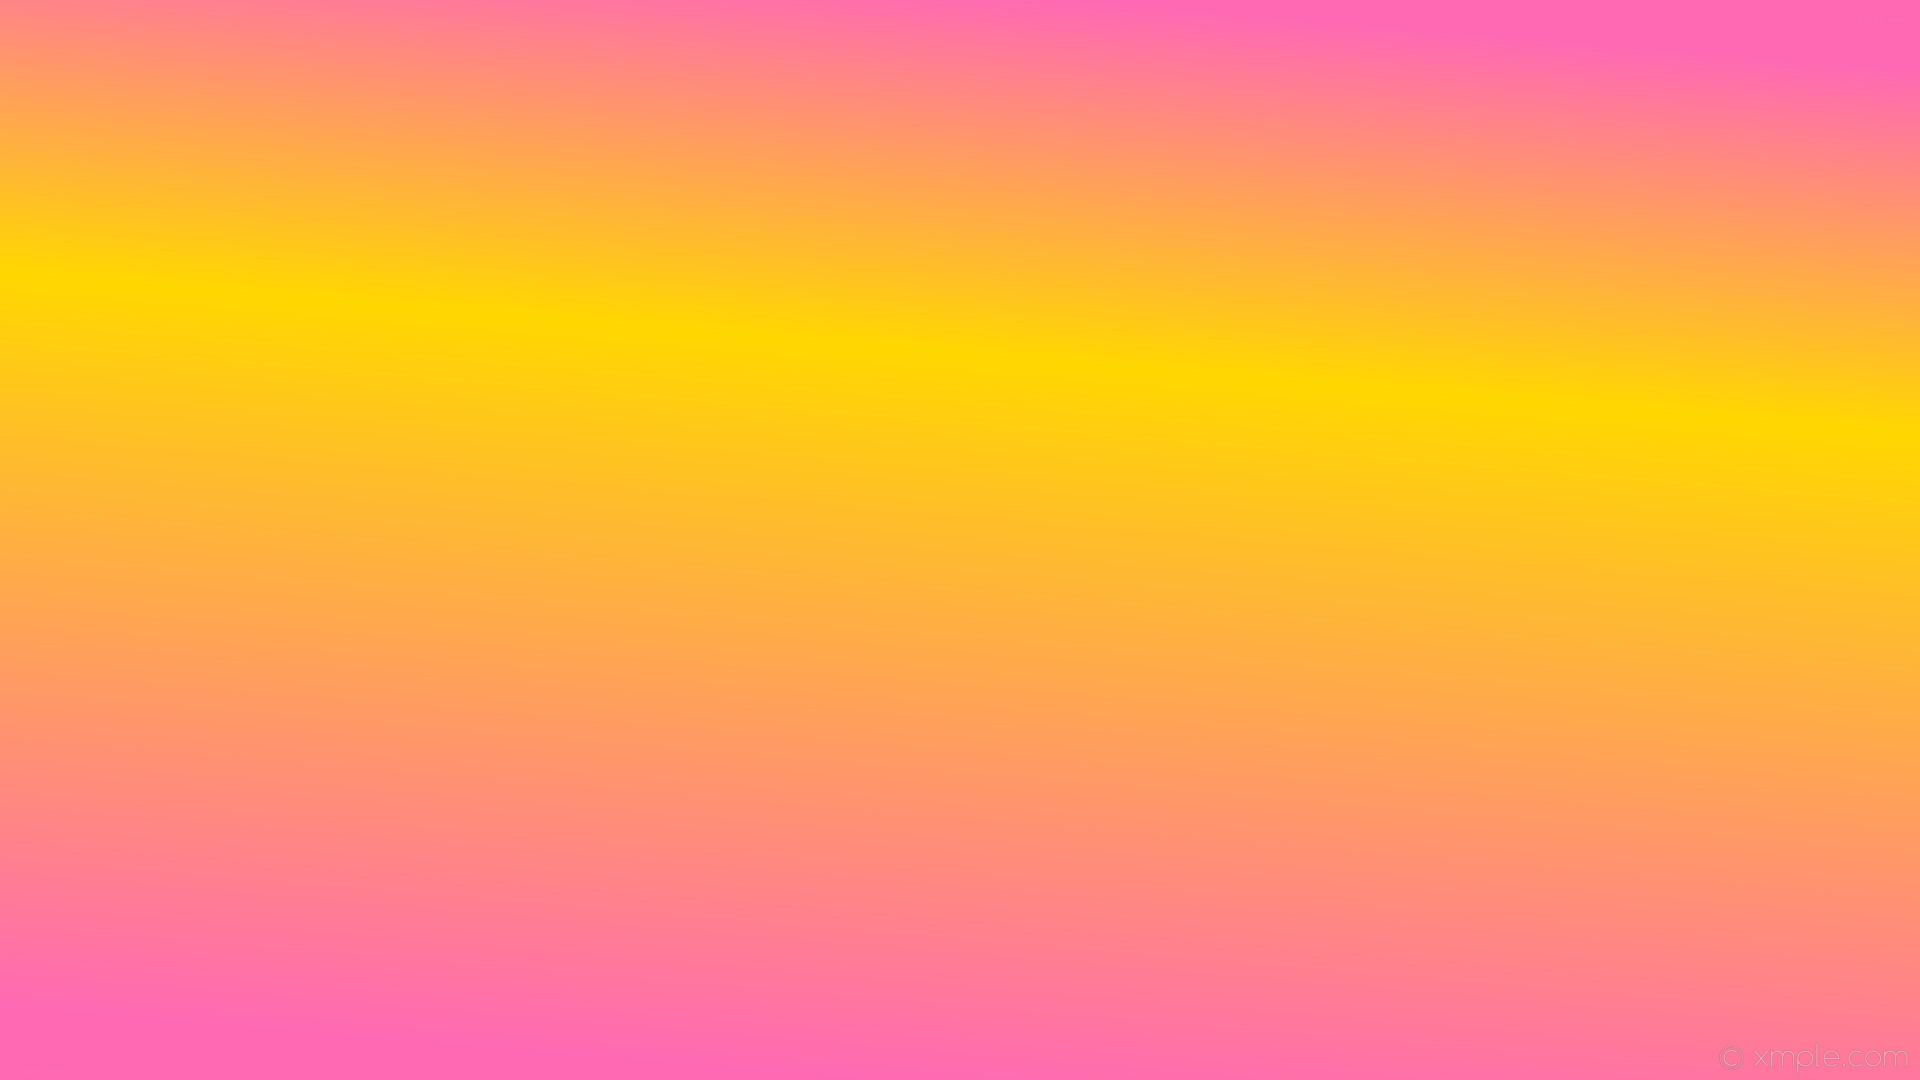 1920x1080 wallpaper gradient highlight yellow pink linear hot pink gold #ff69b4  #ffd700 255Â° 67